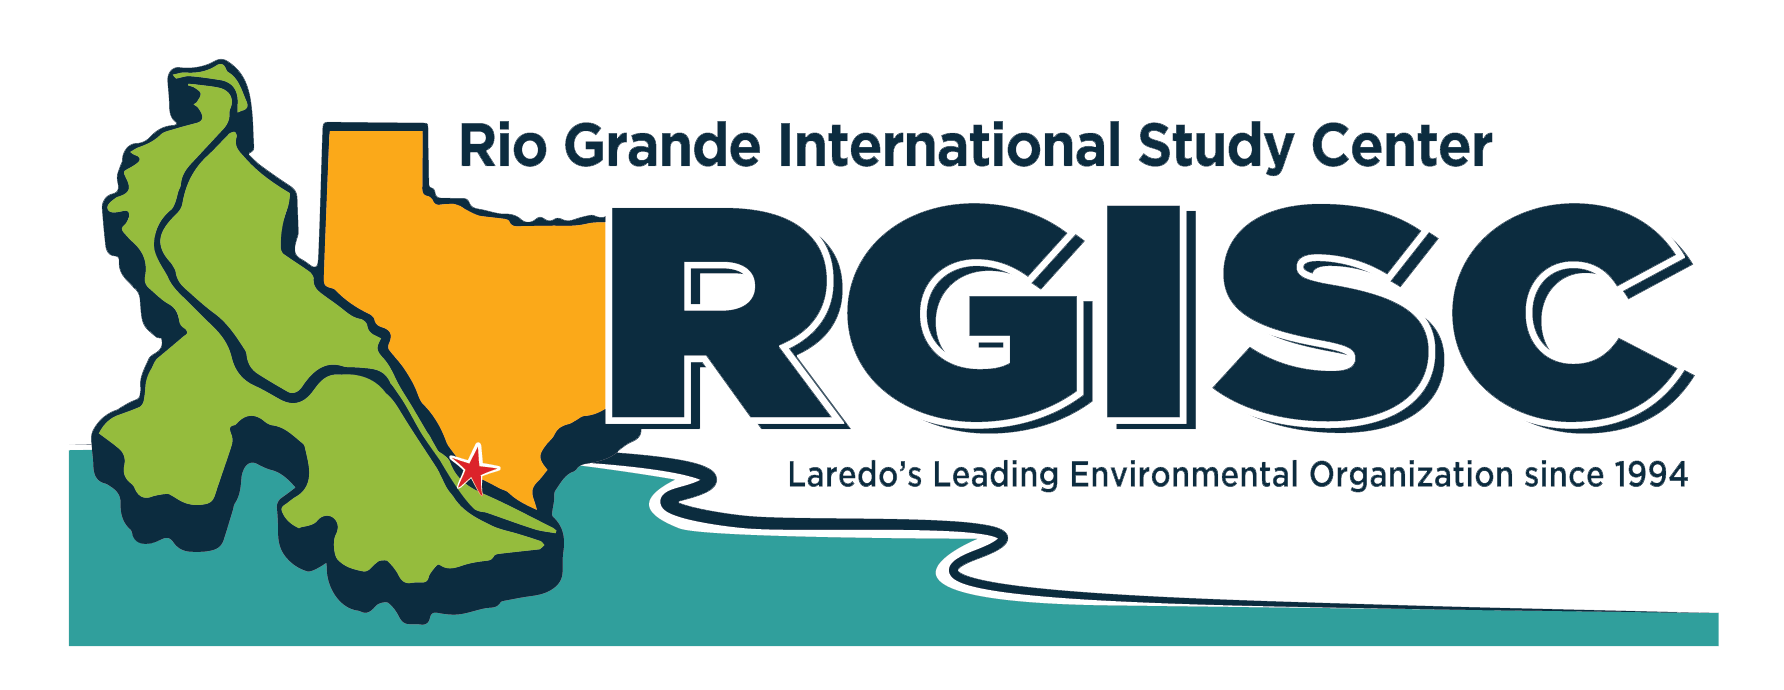 Rio Grande International Study Center logo